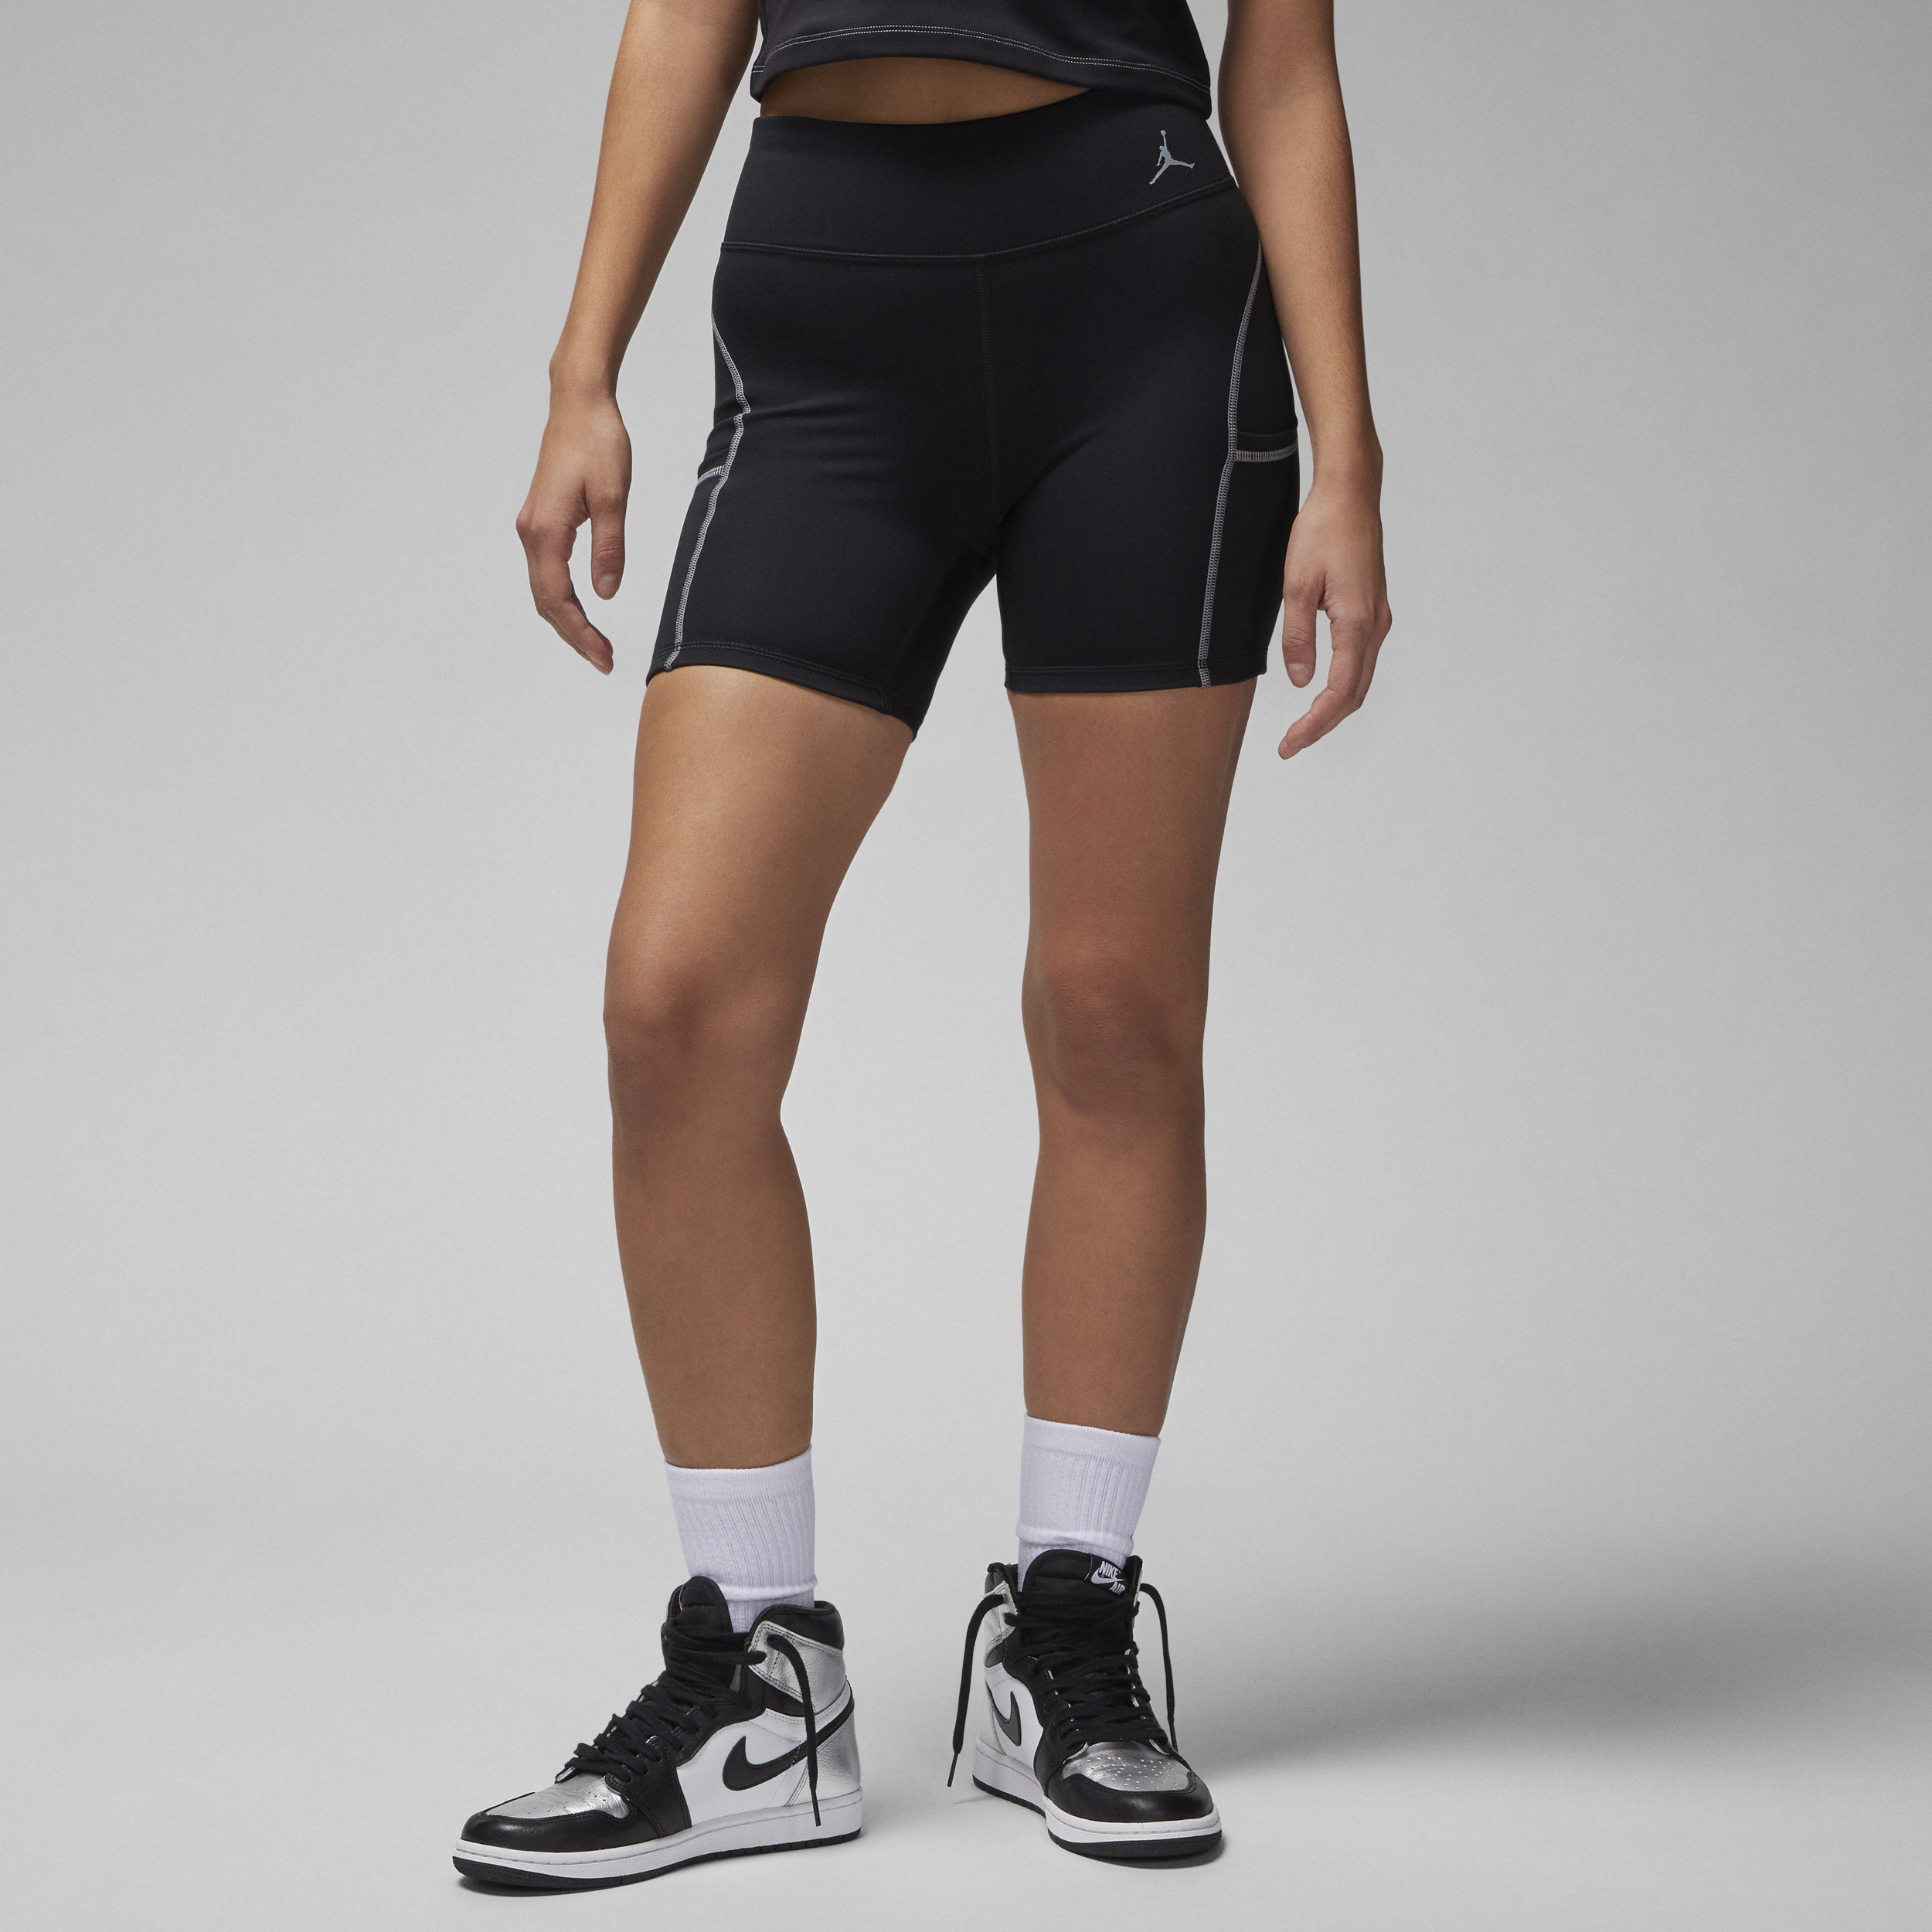 Jordan Sport-shortsene til kvinder - sort